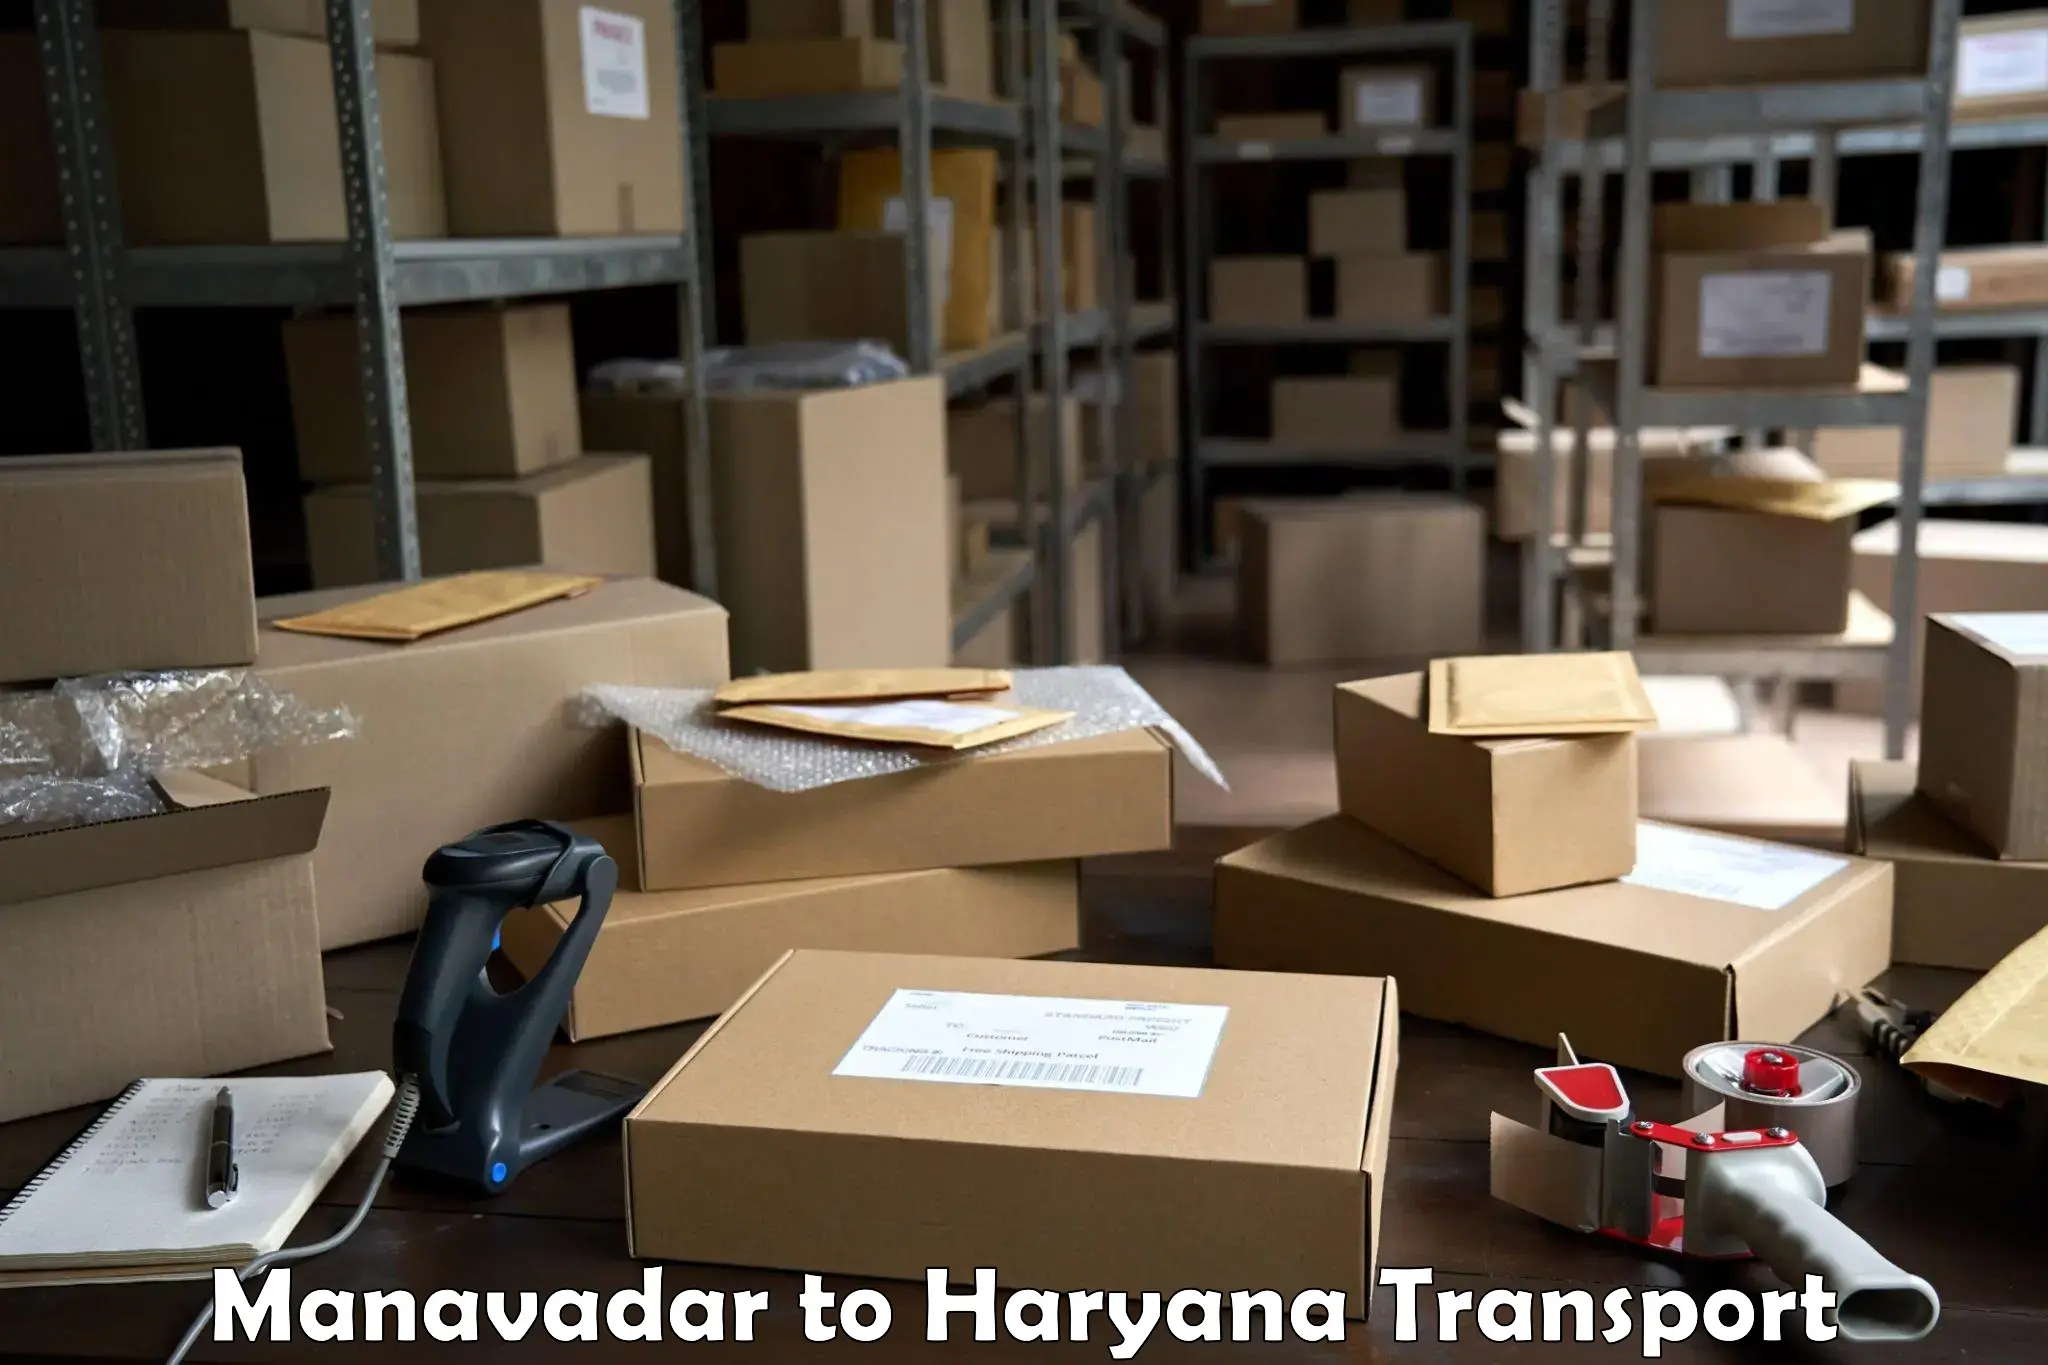 Container transport service Manavadar to Meham